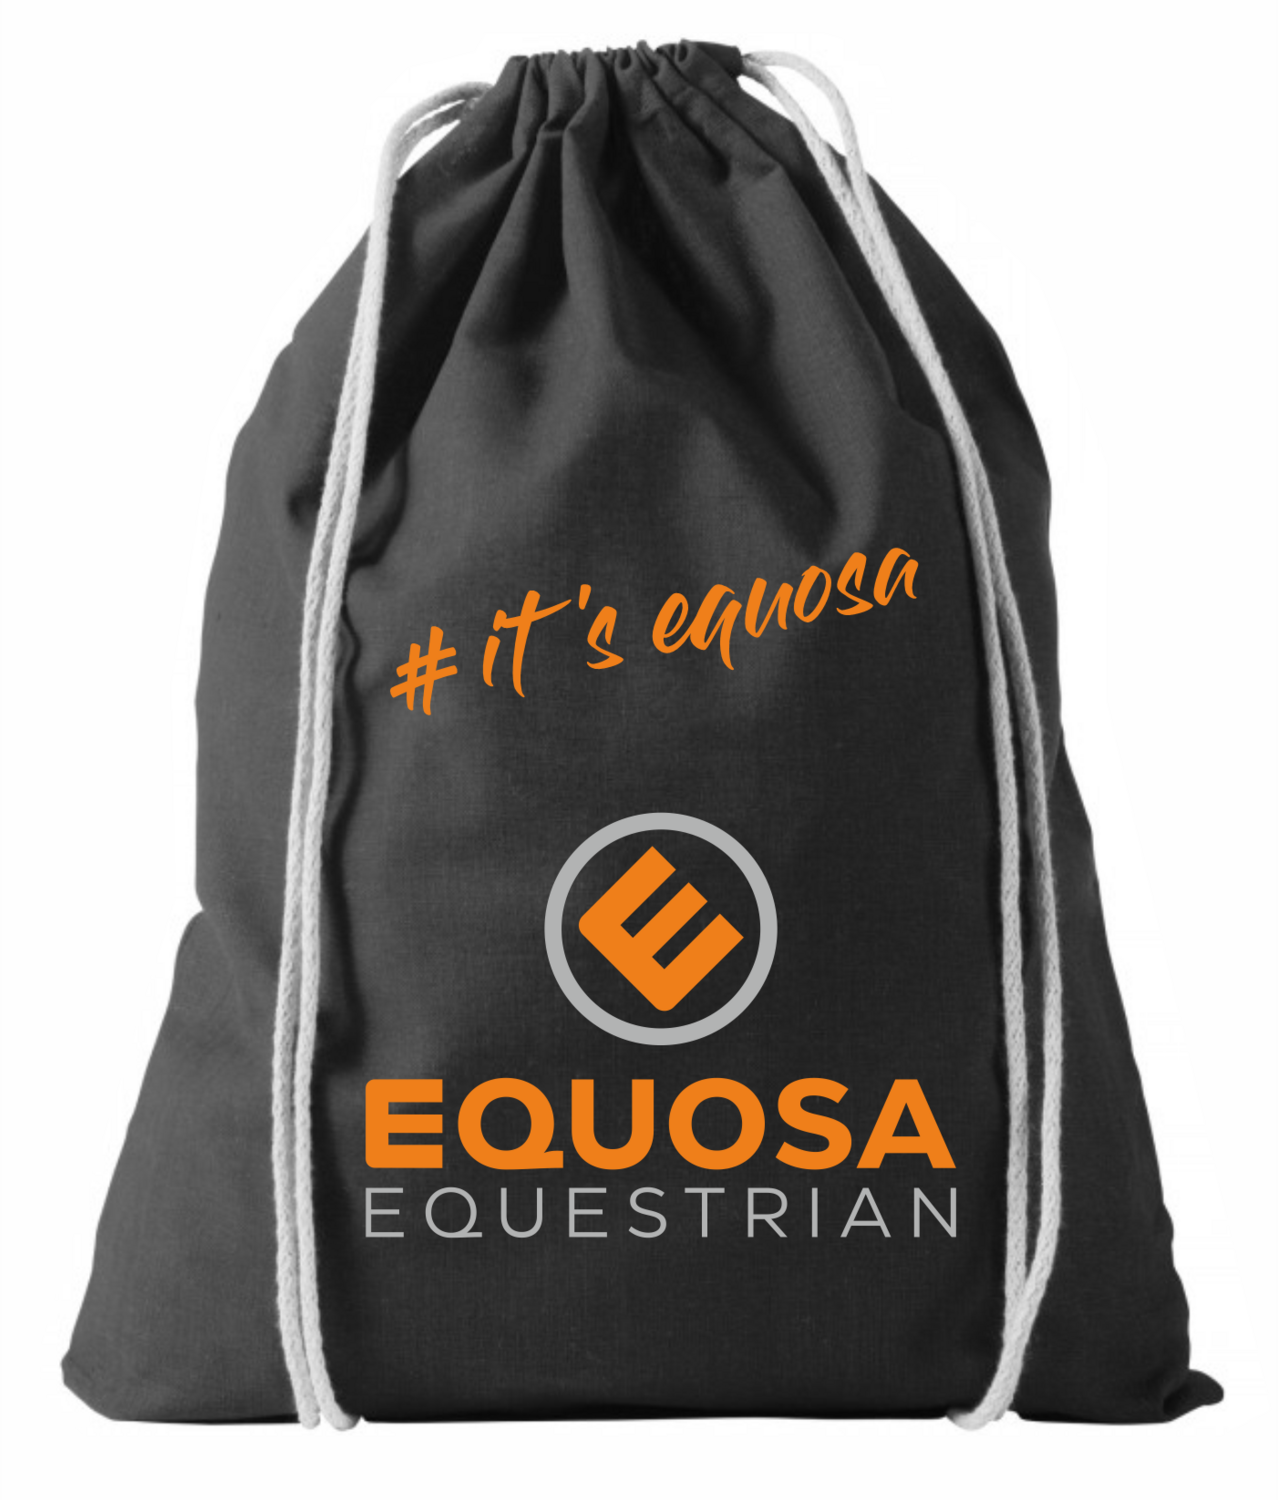 Sports bag it's equosa